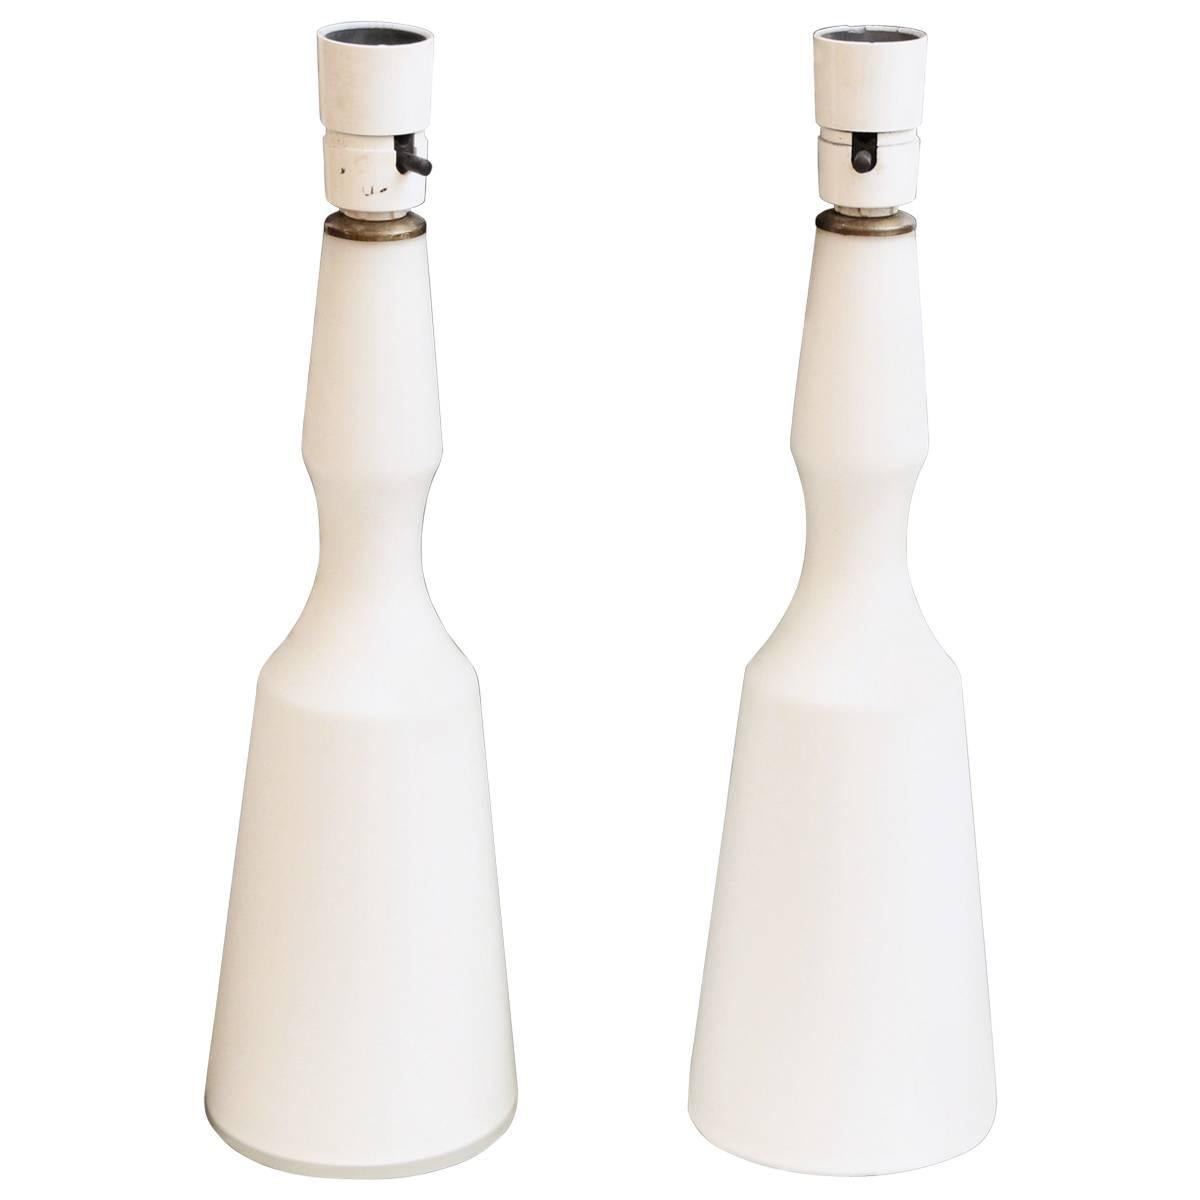 1960s Pair of Mid-Century Modern Danish White Glass Lamps